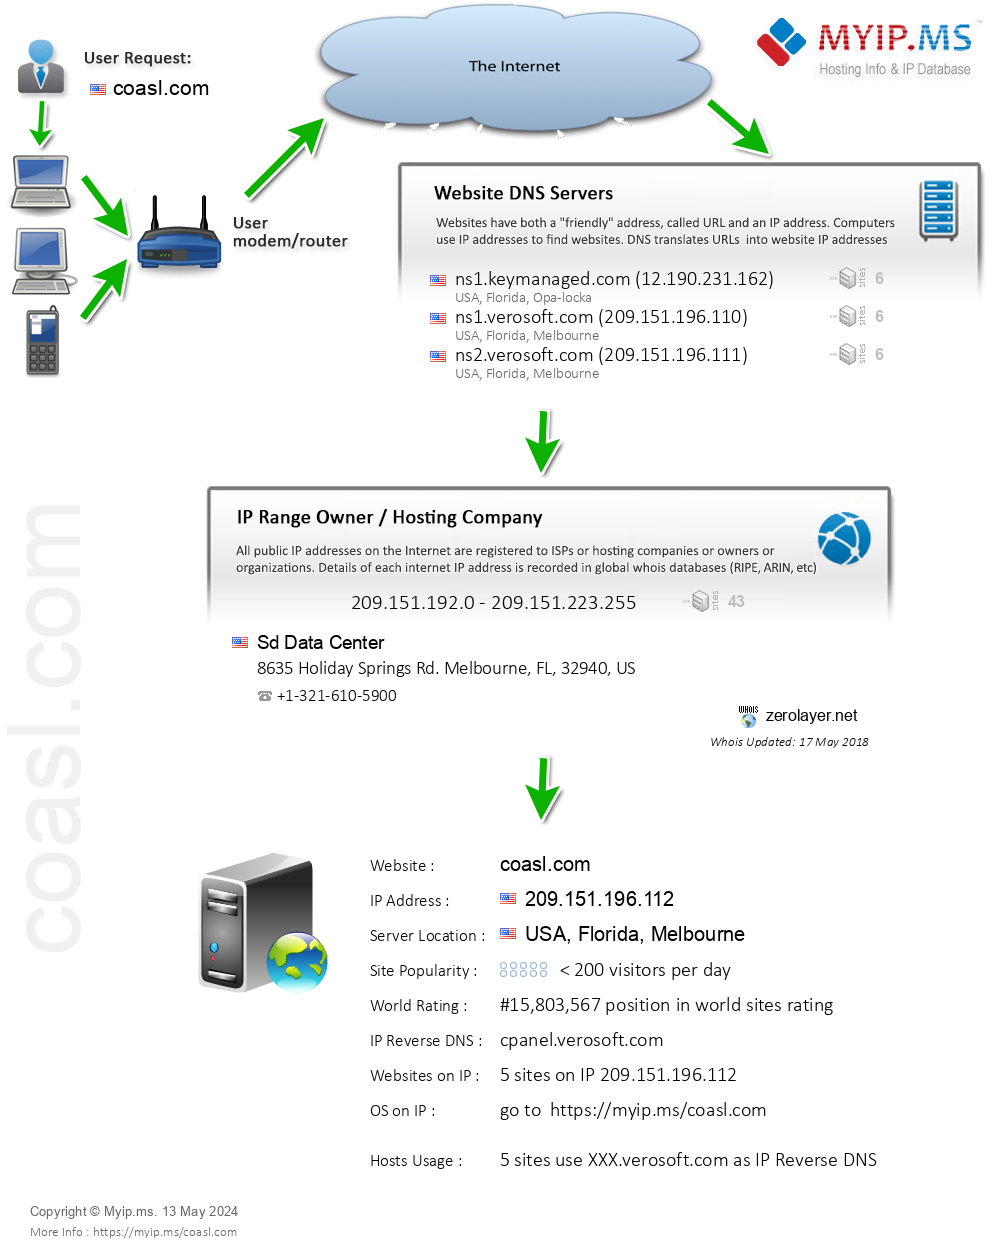 Coasl.com - Website Hosting Visual IP Diagram